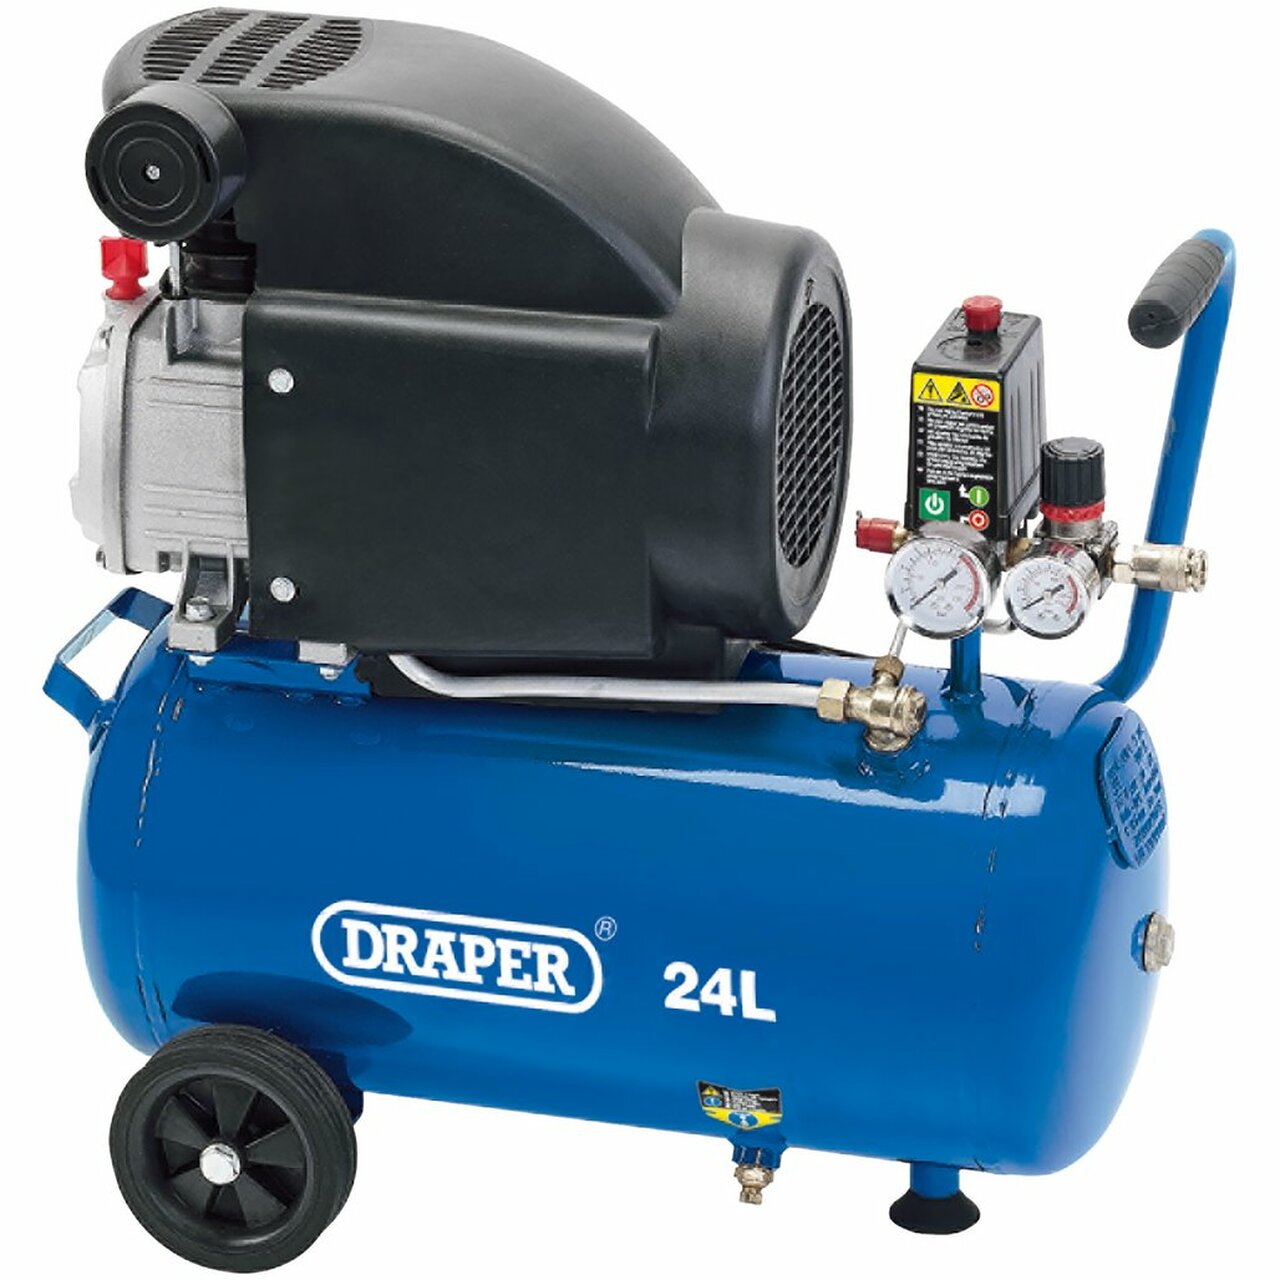 Draper 24980 24L Air compressor 1.5KW